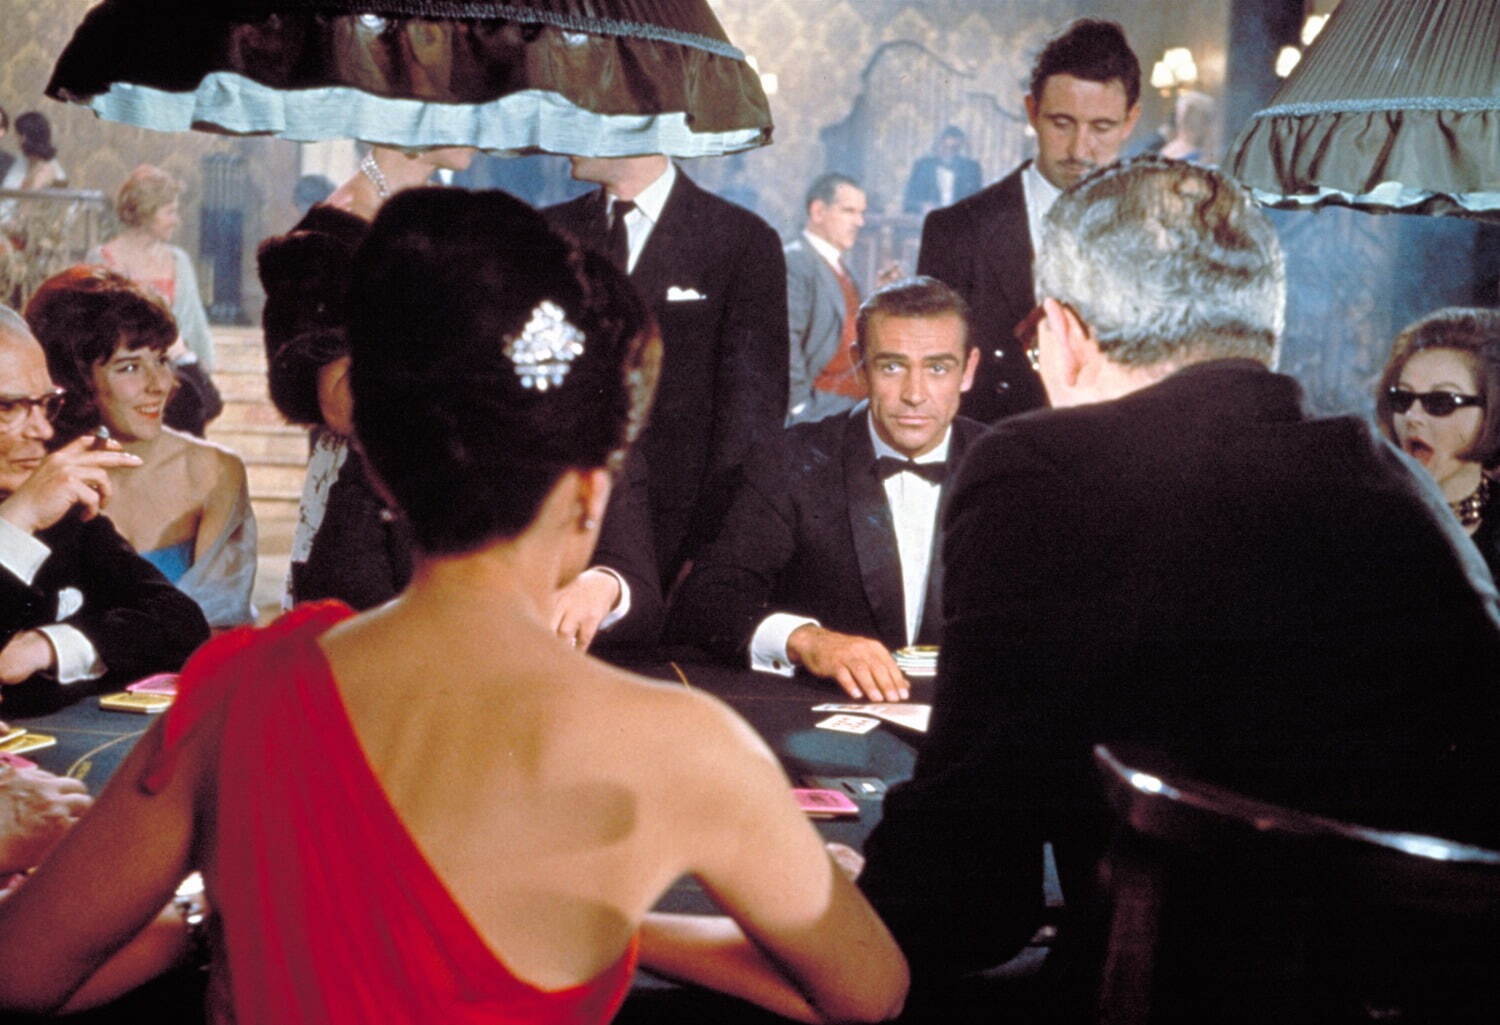 『007/ドクター・ノオ』
DR. NO © 1962 DANJAQ, LLC AND METRO-GOLDWYN-MAYER STUDIOS INC.